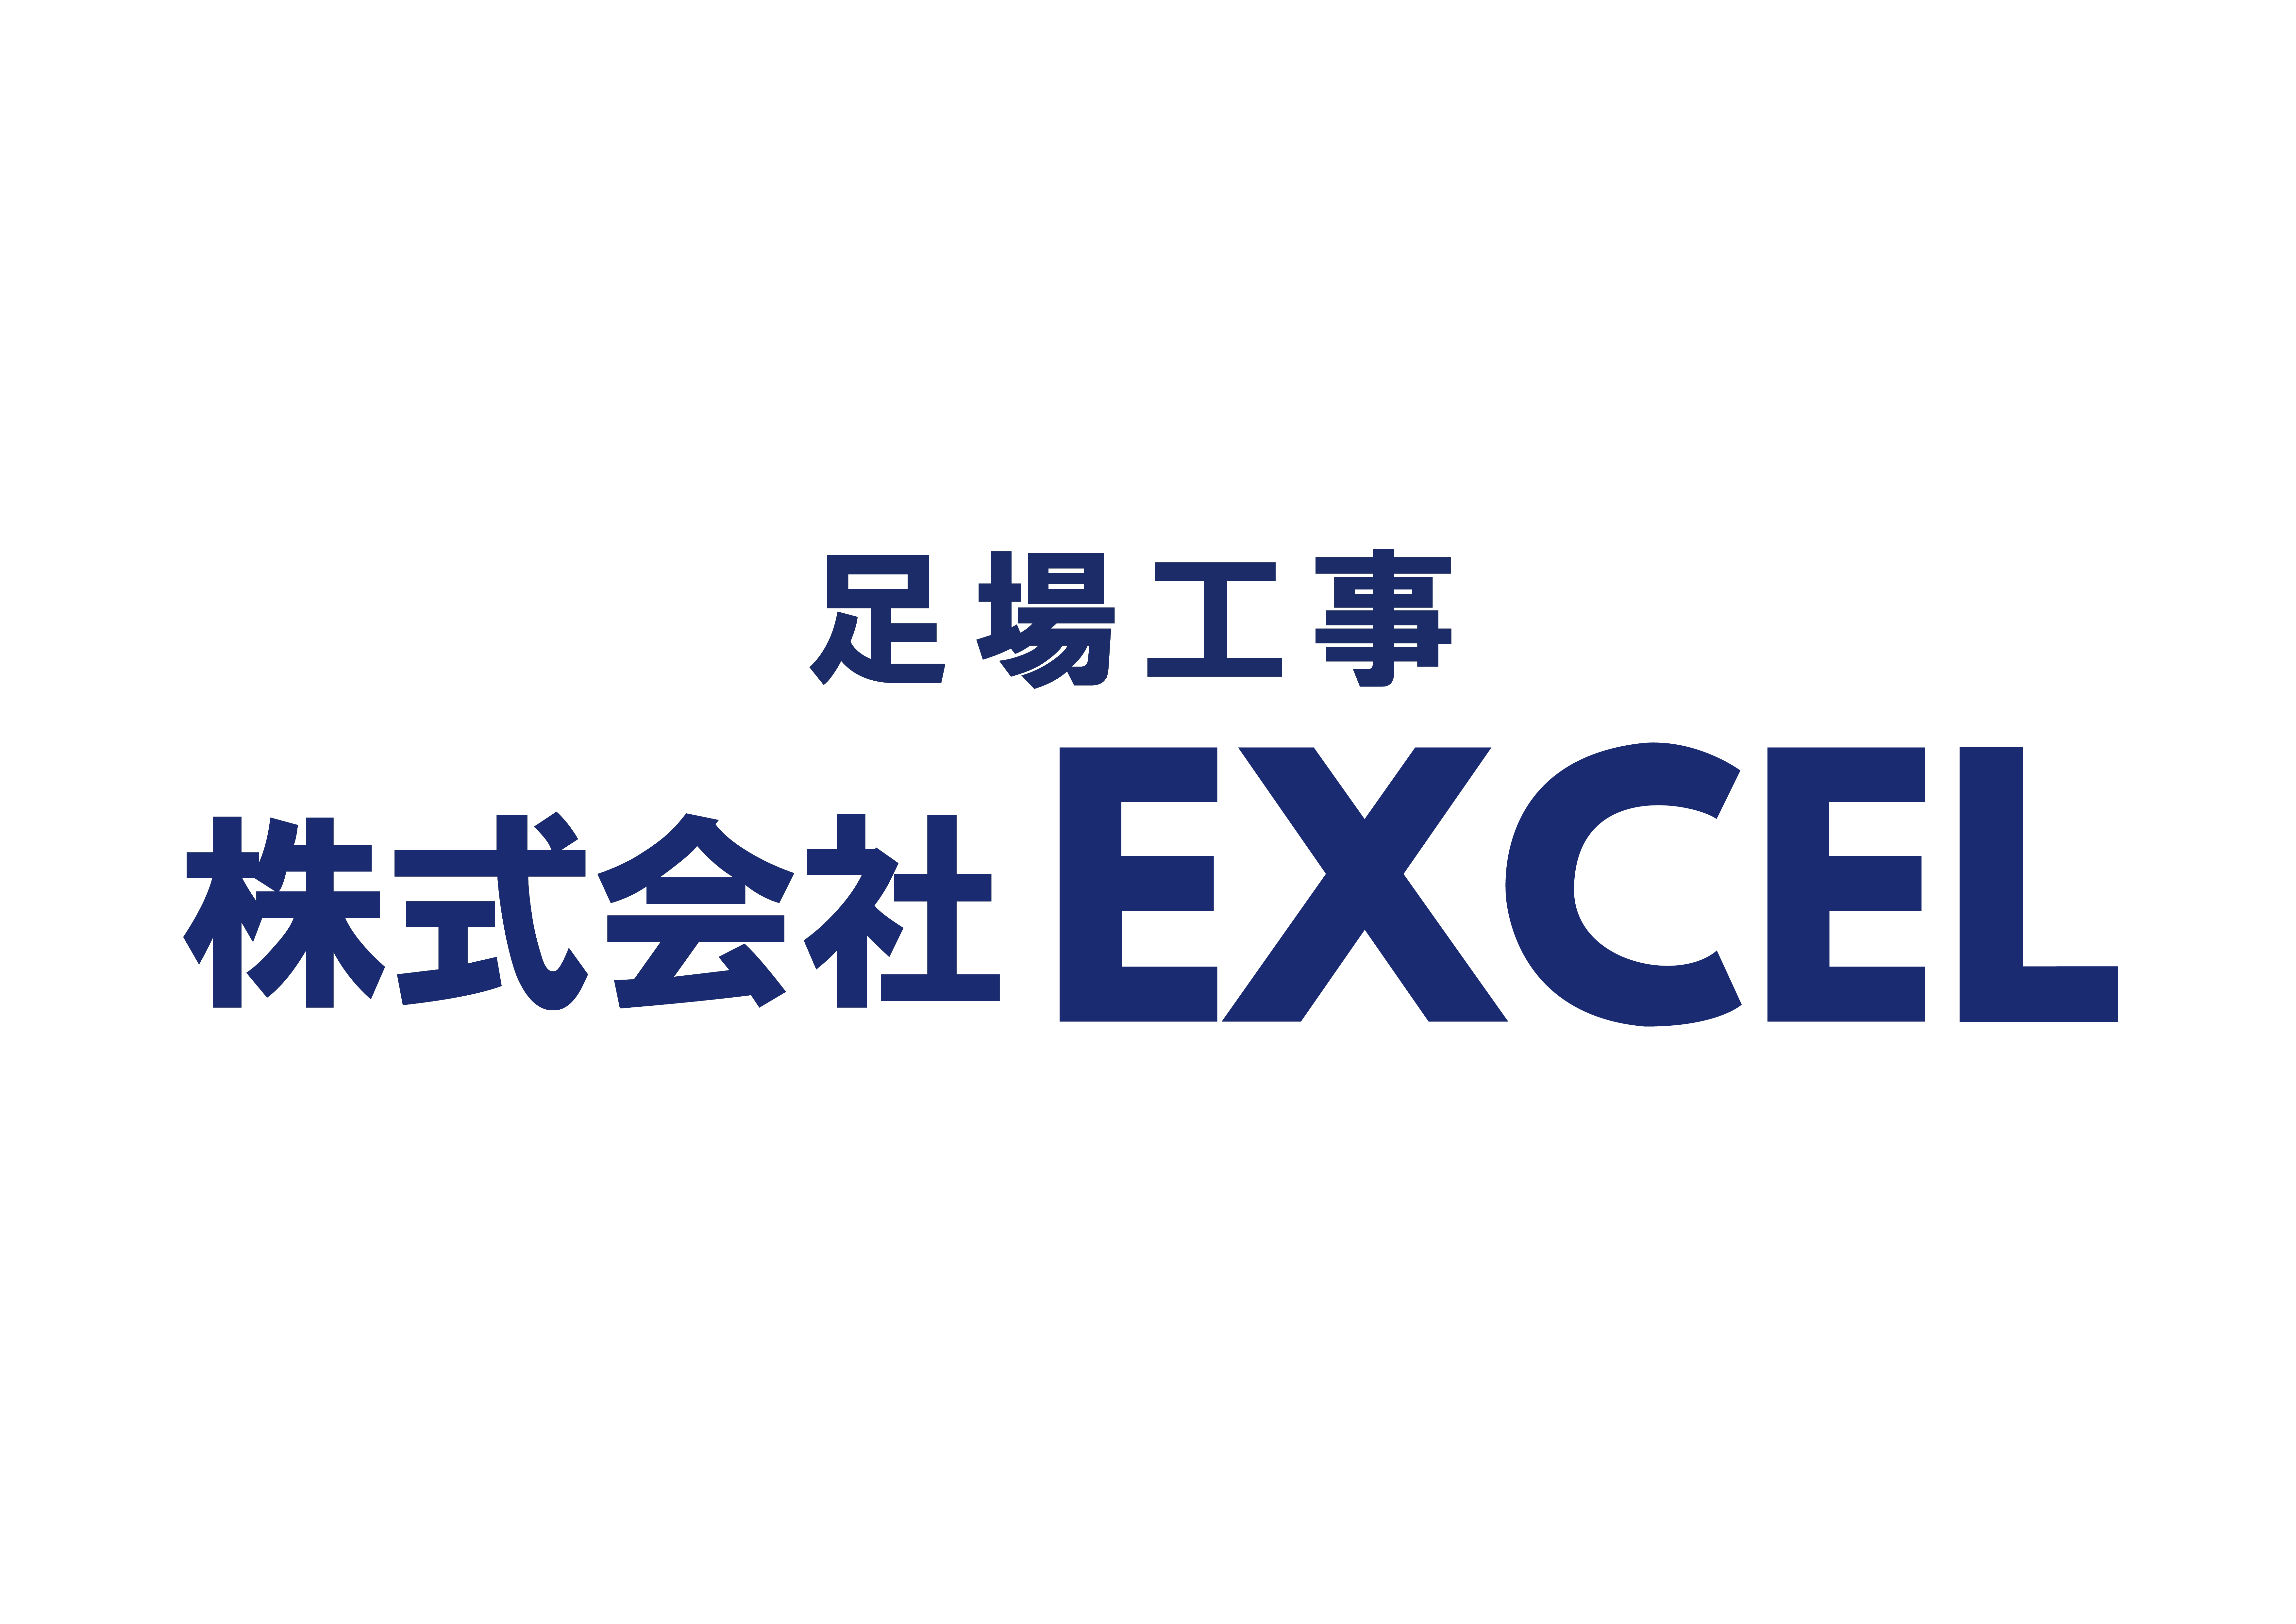 株式会社EXCEL